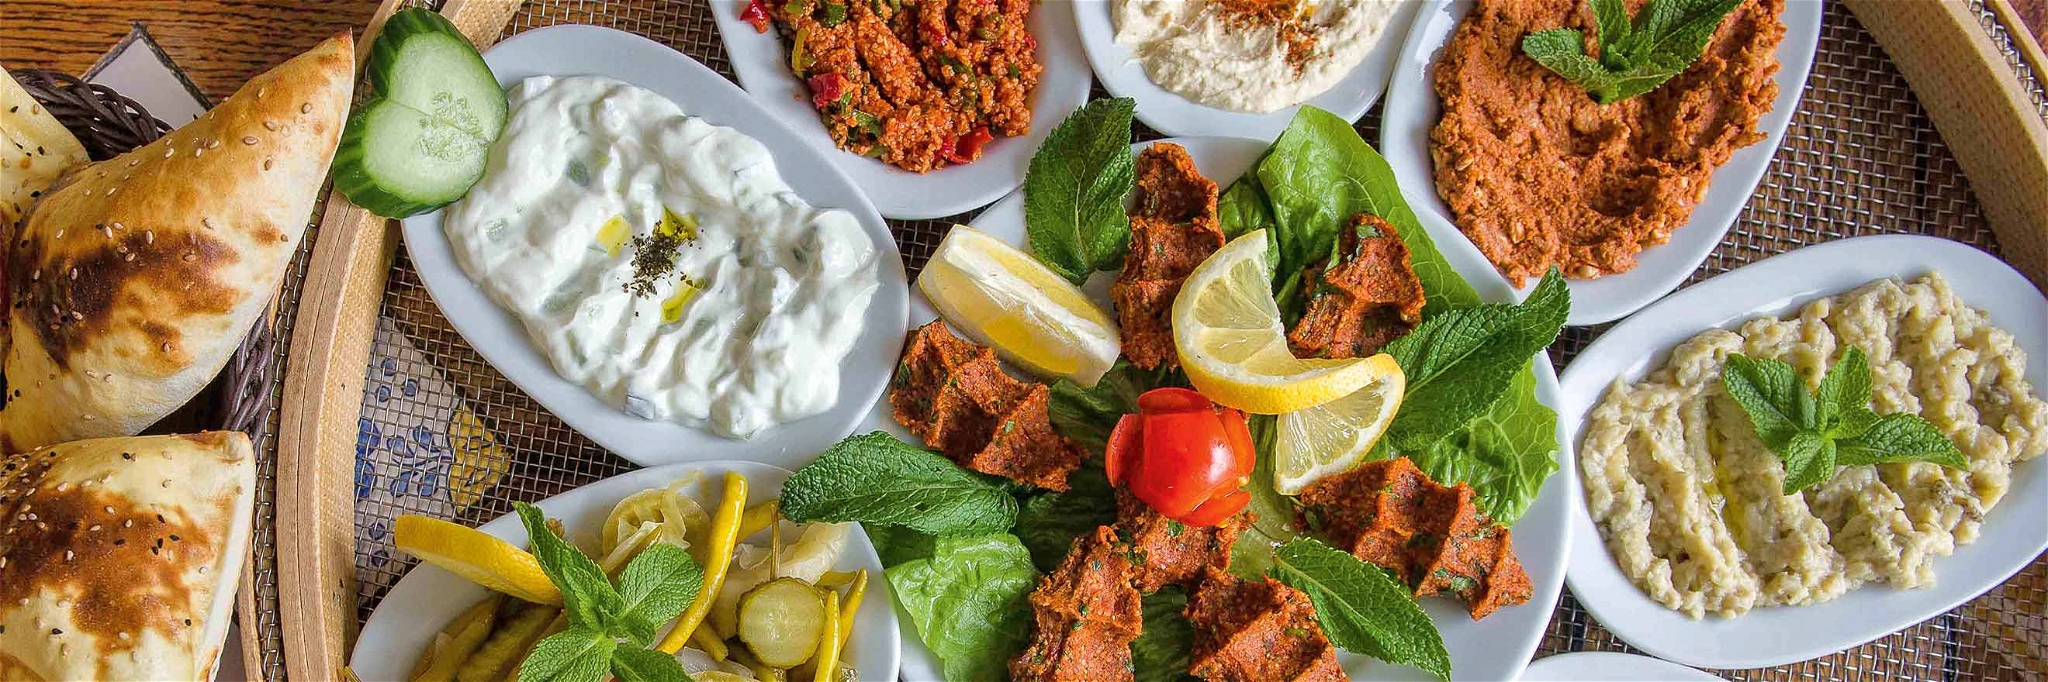 Meze-Tableau: türkische Kost auf ungewohntem Niveau.